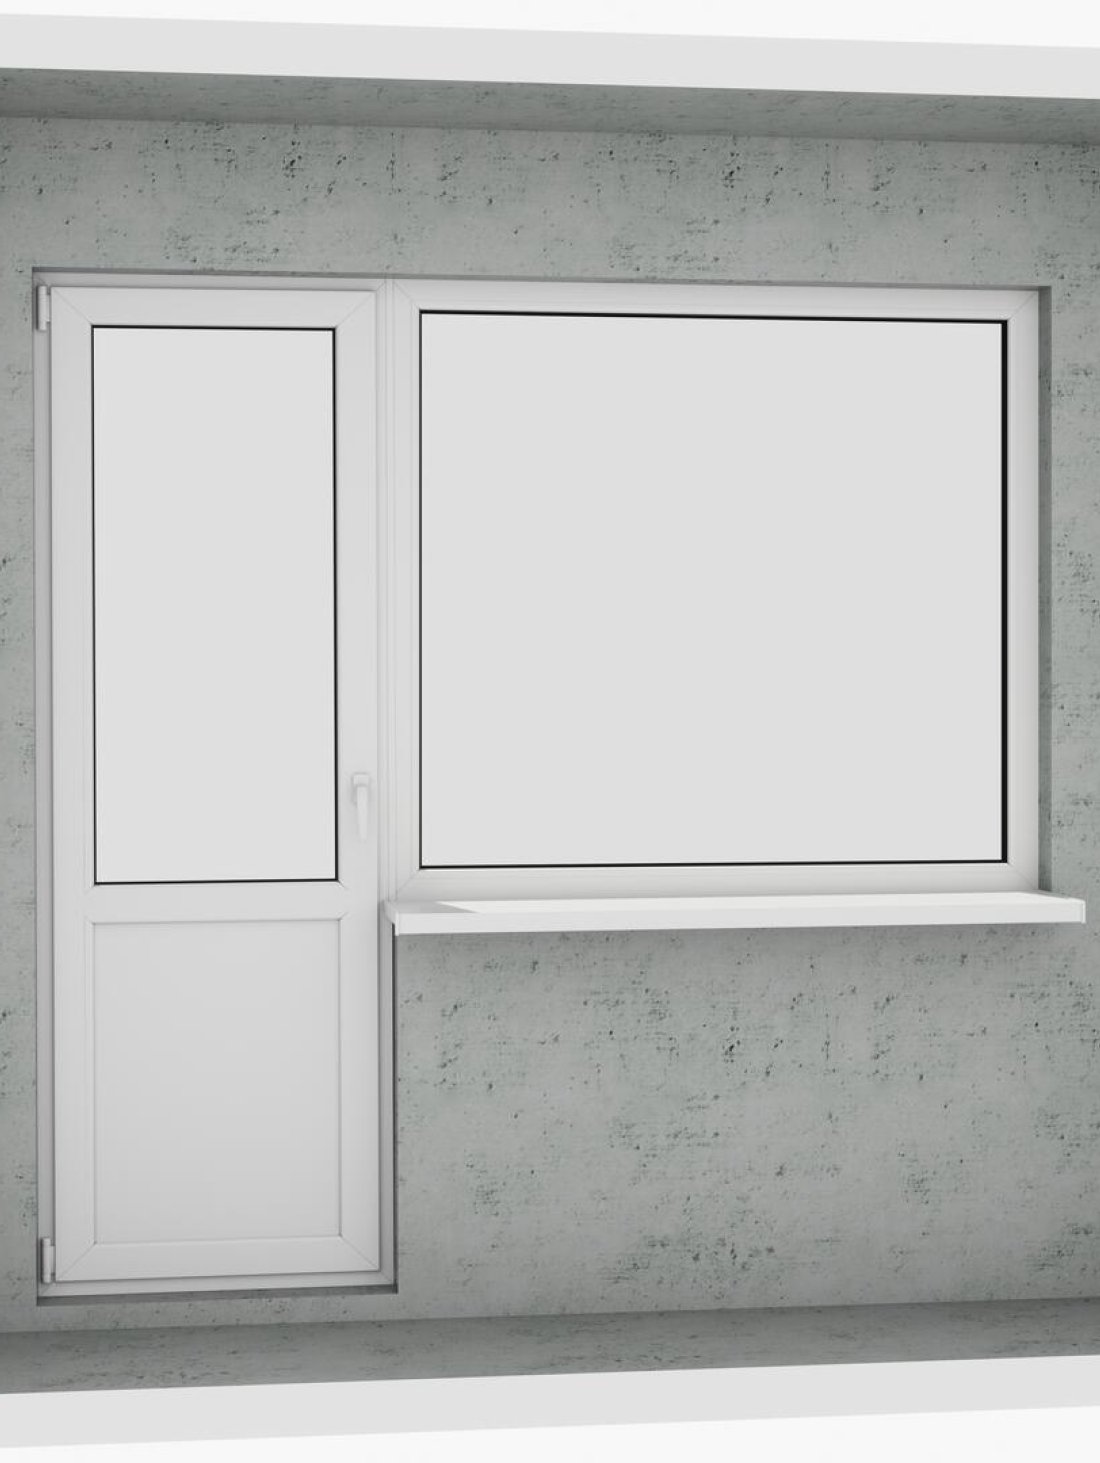 Выход на лоджию (балкон): бюджетный классический белый металлопластиковый балконный блок (в двери есть режим проветривания, окно не открывается) - Паритет